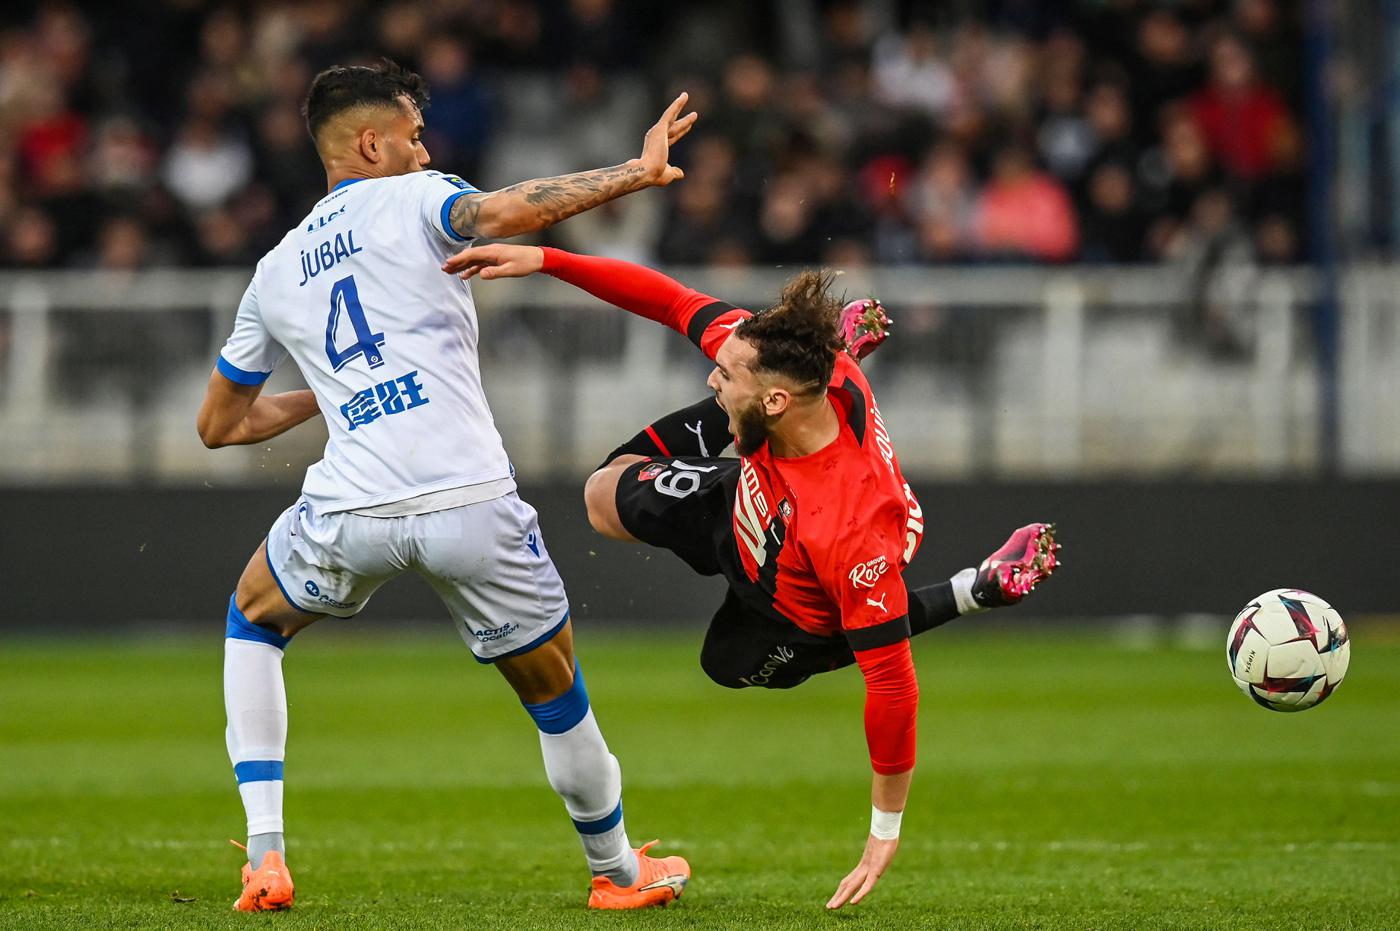 Auxerre - Rennes - 0-0. Französische Meisterschaft, 27. Runde. Überblick über das Spiel, Statistiken.